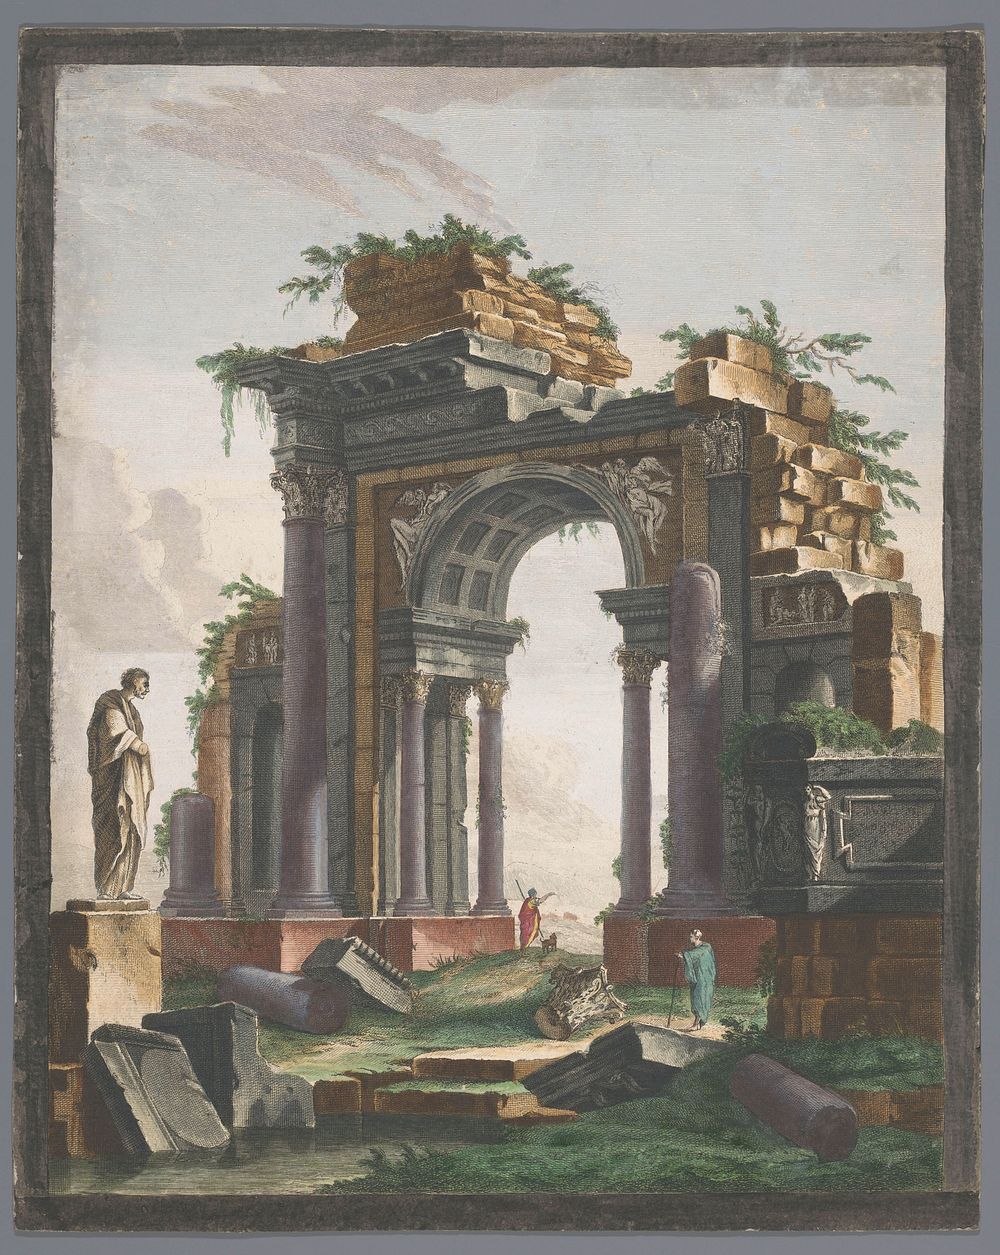 Gezicht op de ruïne van een triomfboog (1753 - 1797) by Pierre François Basan, Pierre Fouquet, Pierre François Basan and…